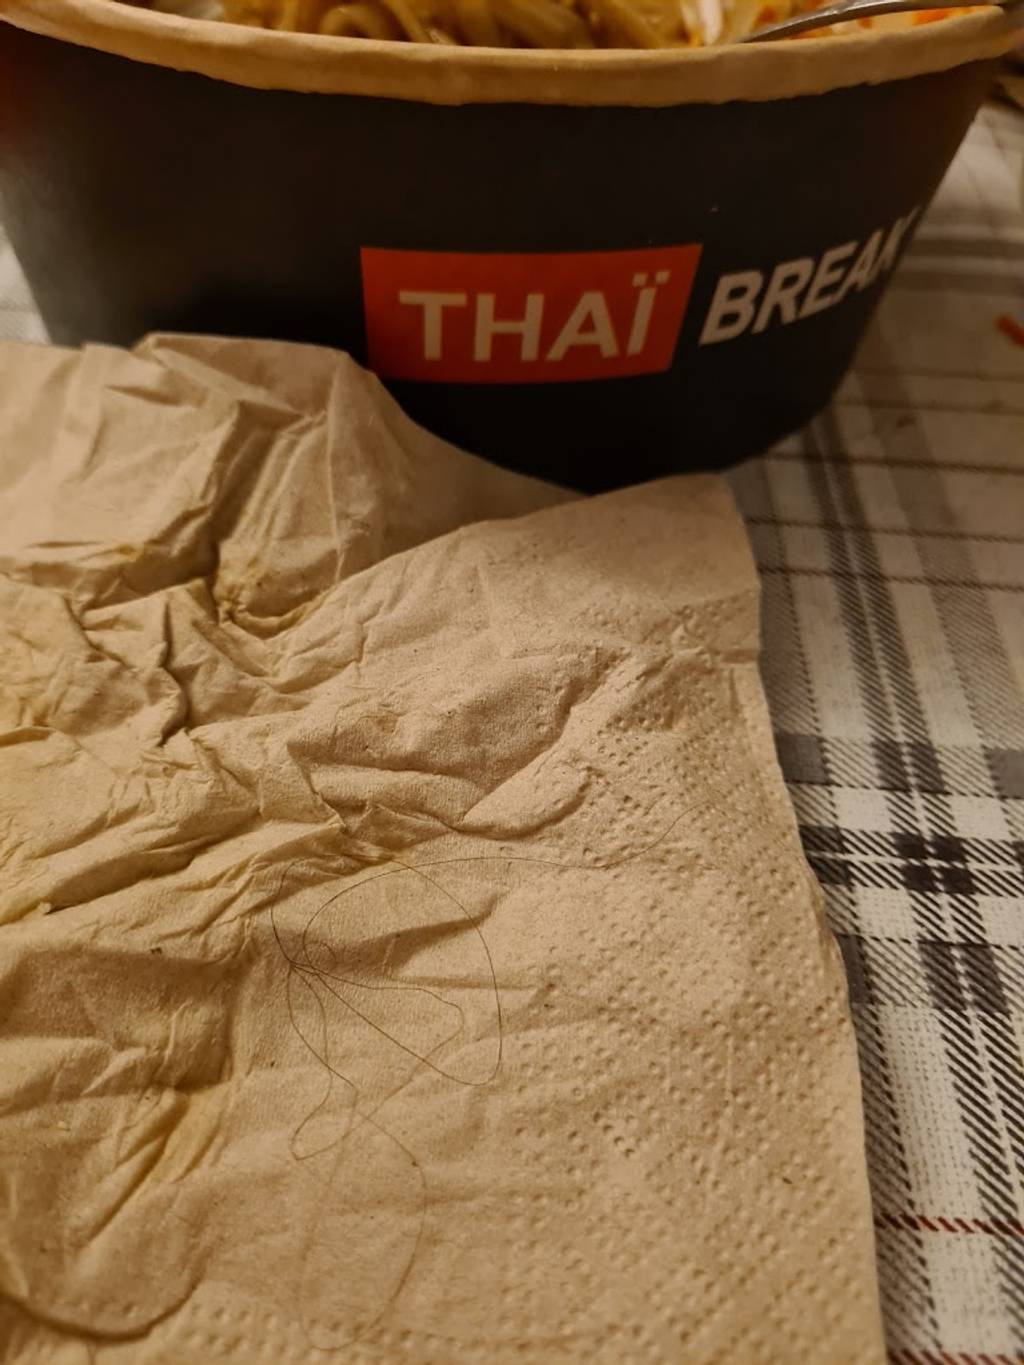 Thaï Break - Angers Angers - Wood Sleeve Table Ingredient Food